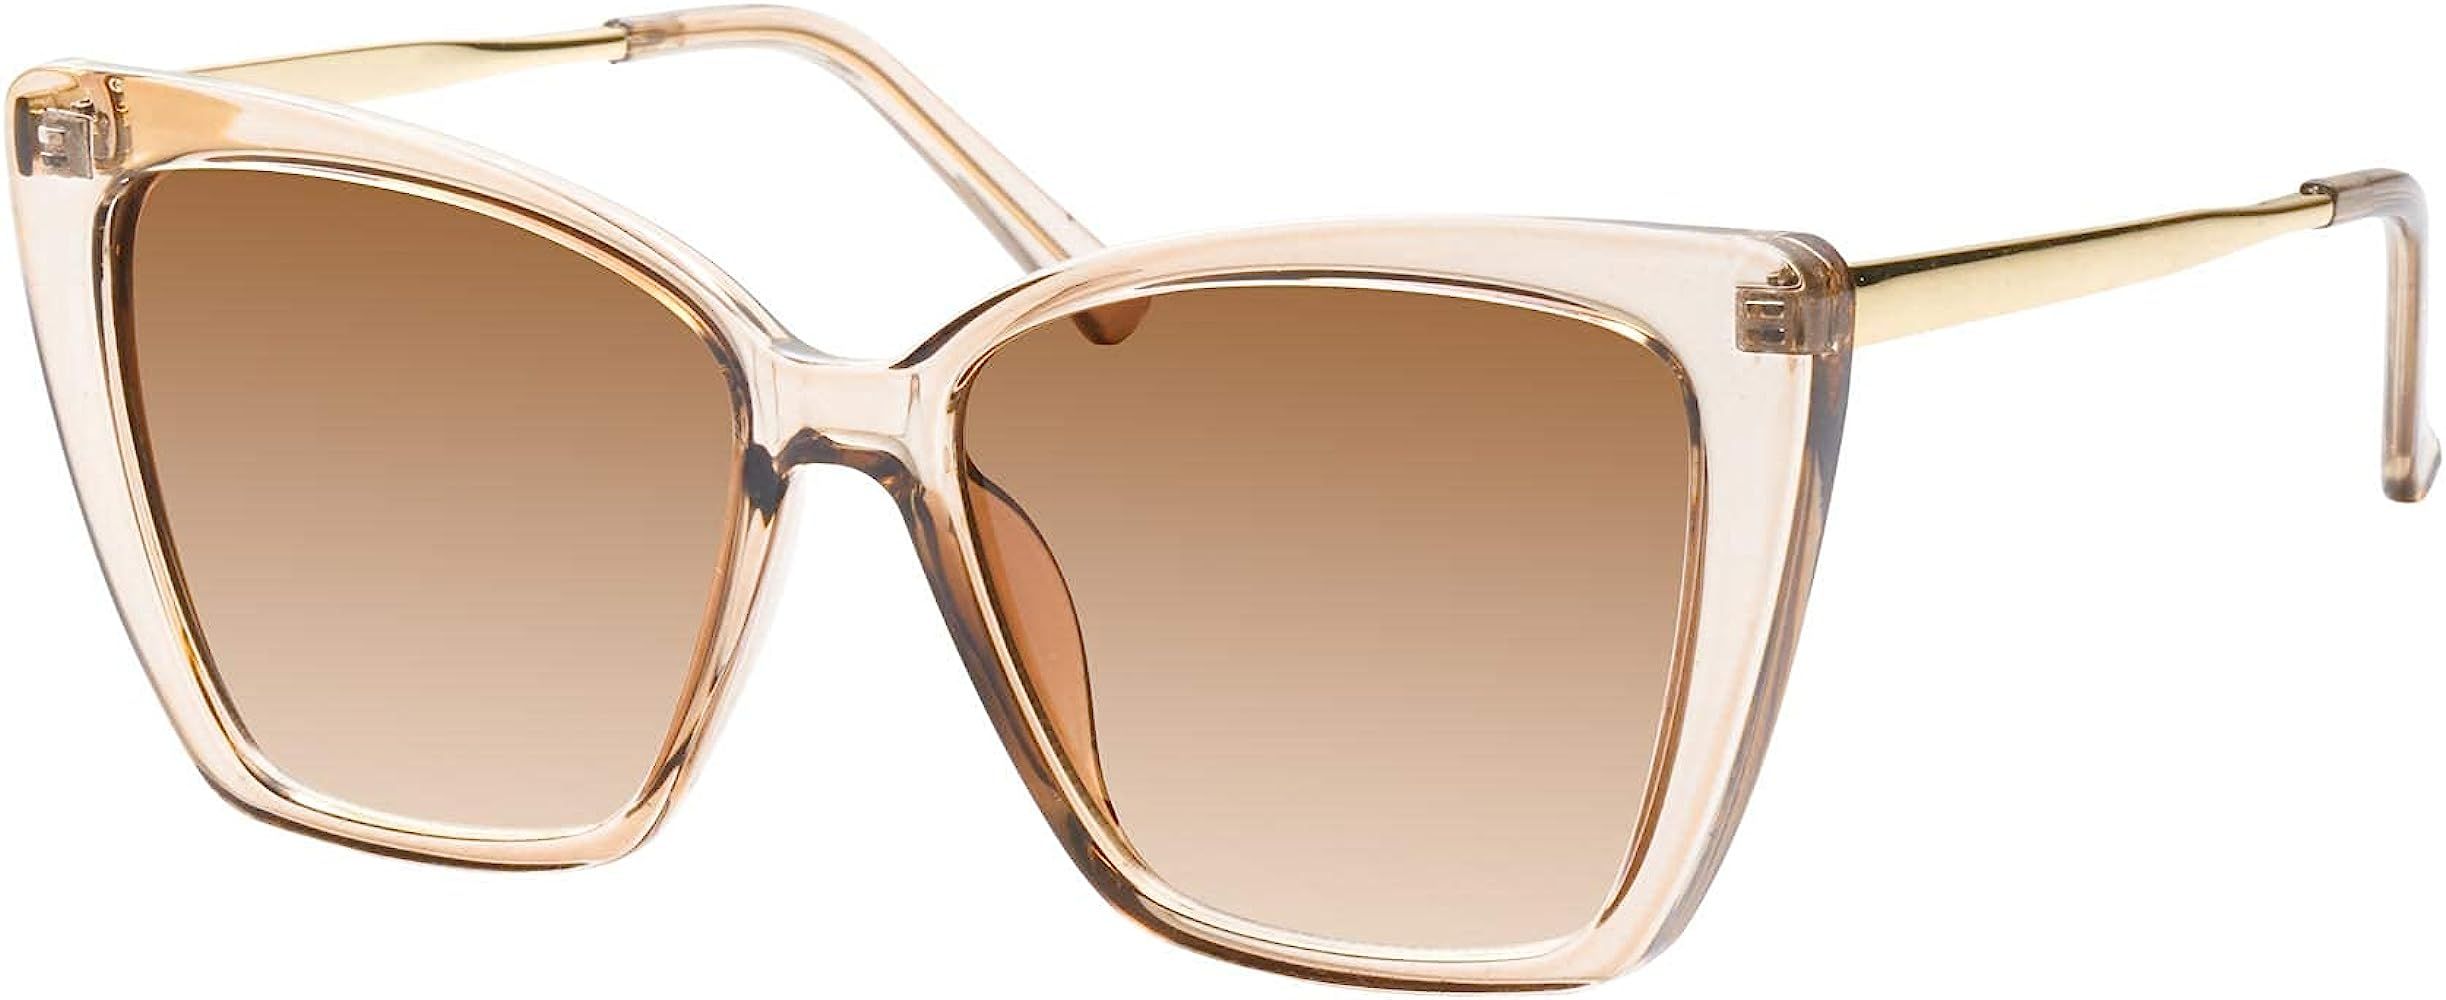 Mosanana Oversized Cat Eye Sunglasses for Women Trendy Style MODEL-GLAM | Amazon (US)